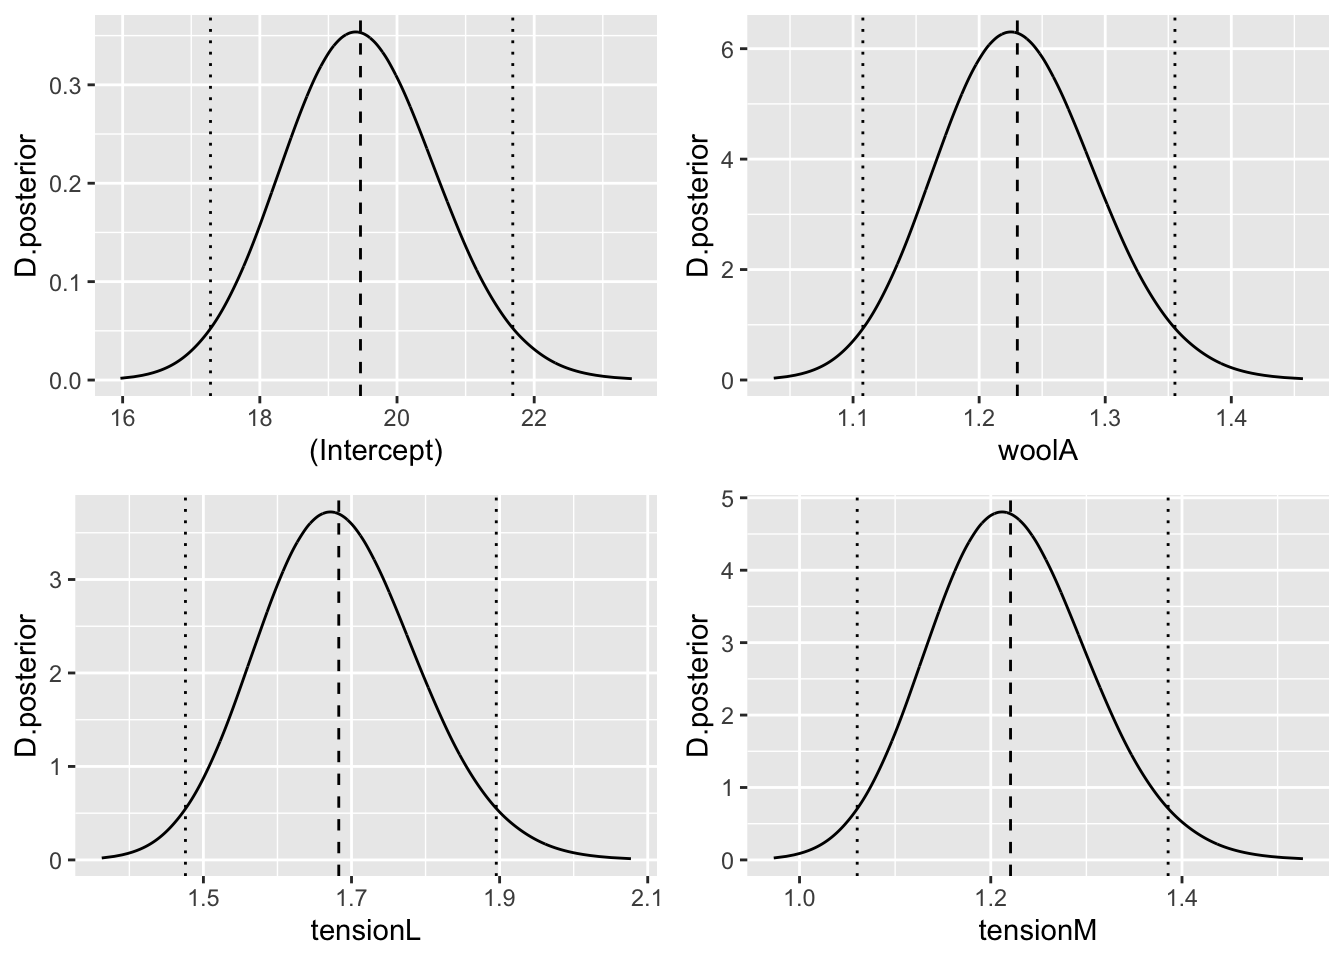 Distribución posterior de los exponenciales de los efectos fijos, con niveles de referencia wool=B y tension=H